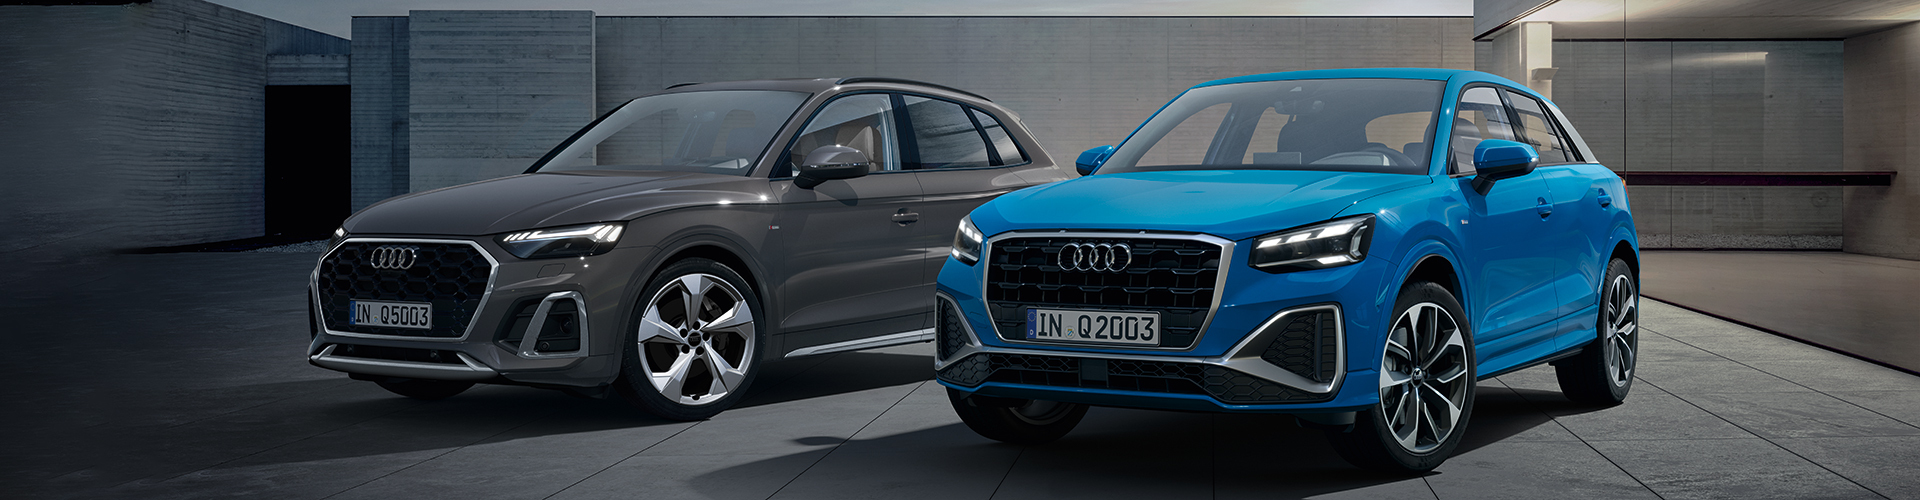 Audi Q Modelle grau / blau